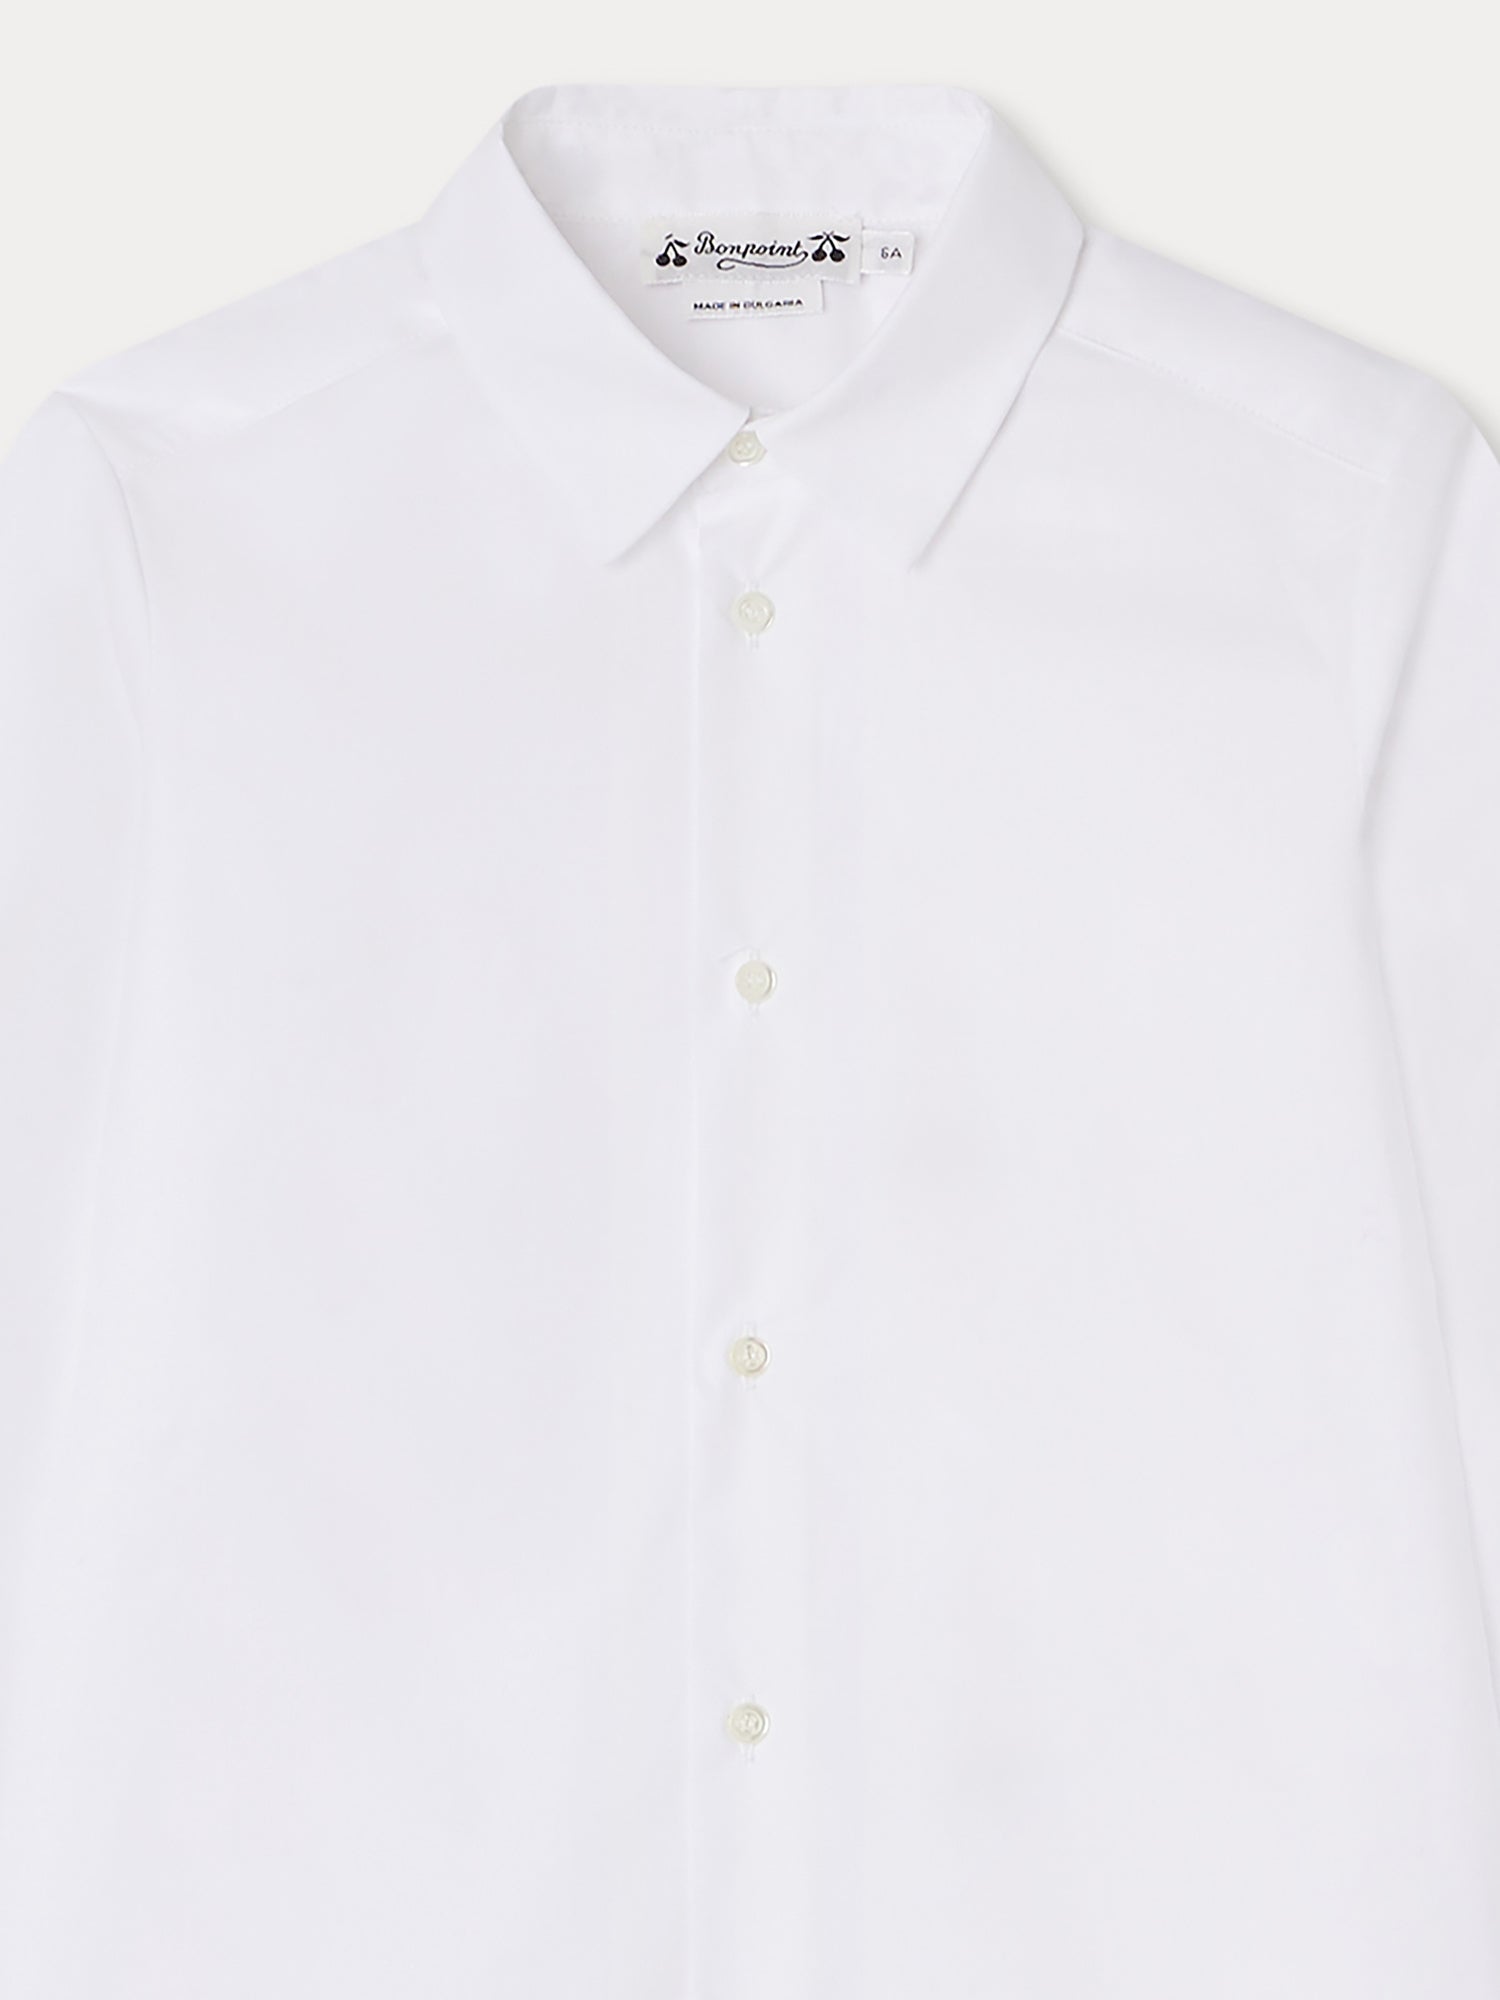 Aristote Shirt white • Bonpoint